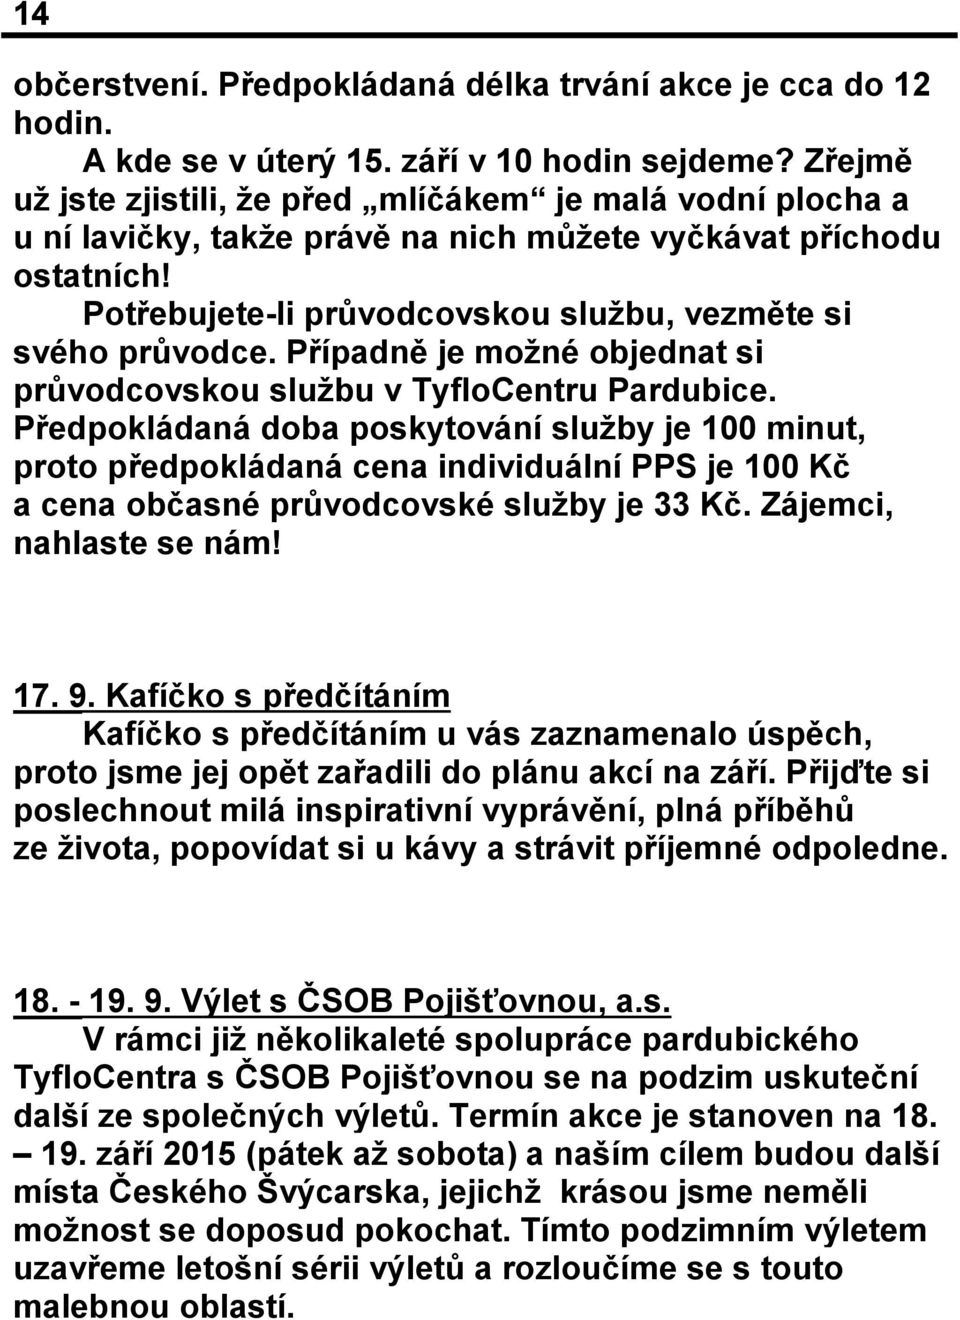 Případně je možné objednat si průvodcovskou službu v TyfloCentru Pardubice.